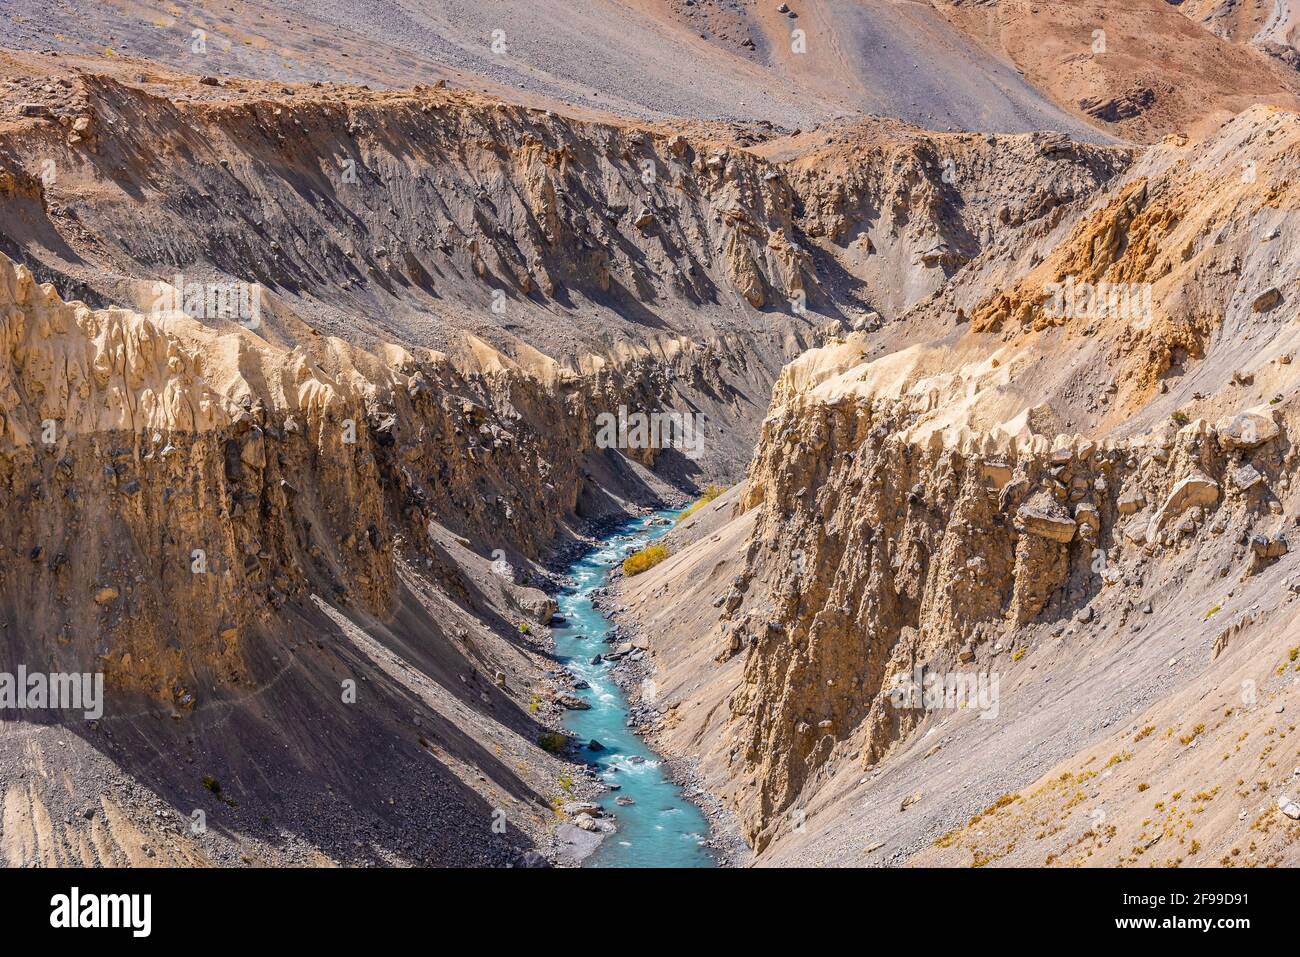 Splendido paesaggio della valle del fiume Spiti con la forma geologica della regione di Lahaul Spiti dell'Himalaya, in Himachal Pradesh, India. Foto Stock